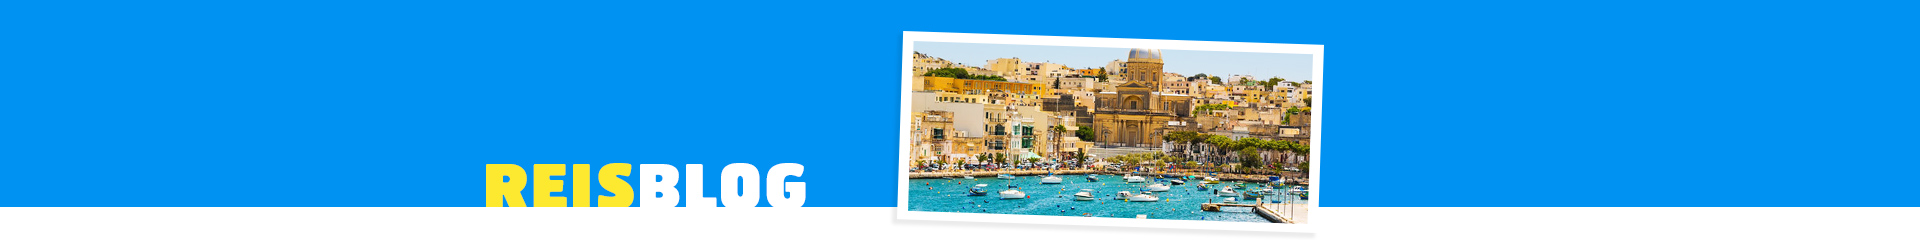 Mooi historisch dorp in Malta aan de blauwe zee